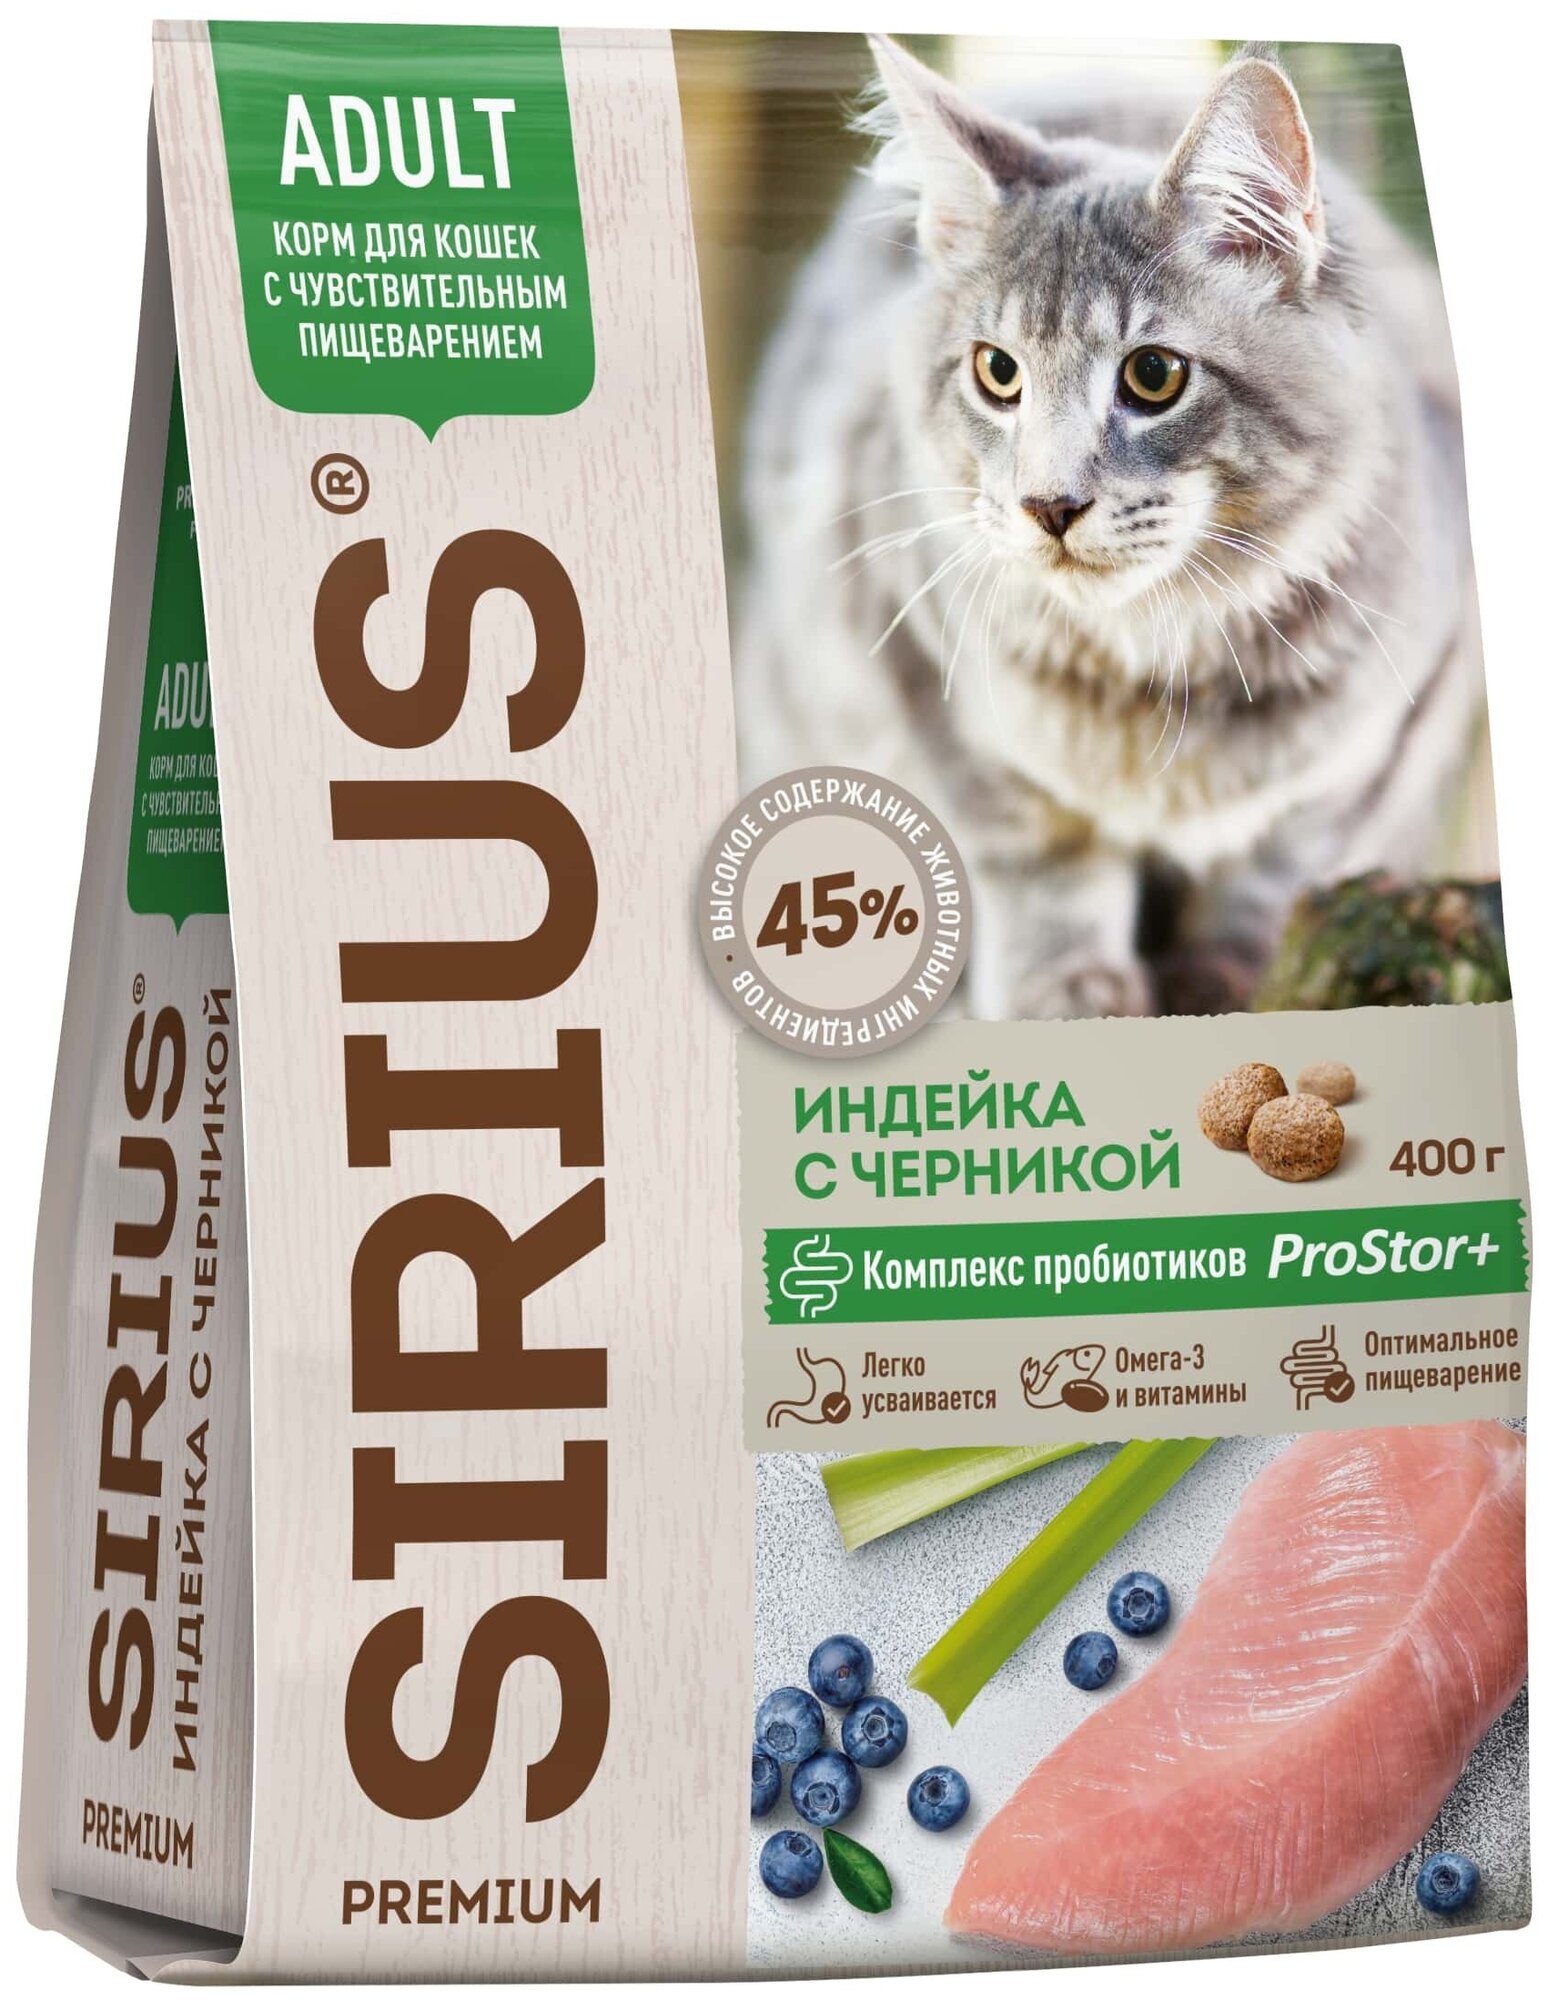 Сухой корм для кошек Sirius при чувствительном пищеварении, с индейкой, с черникой 400 г